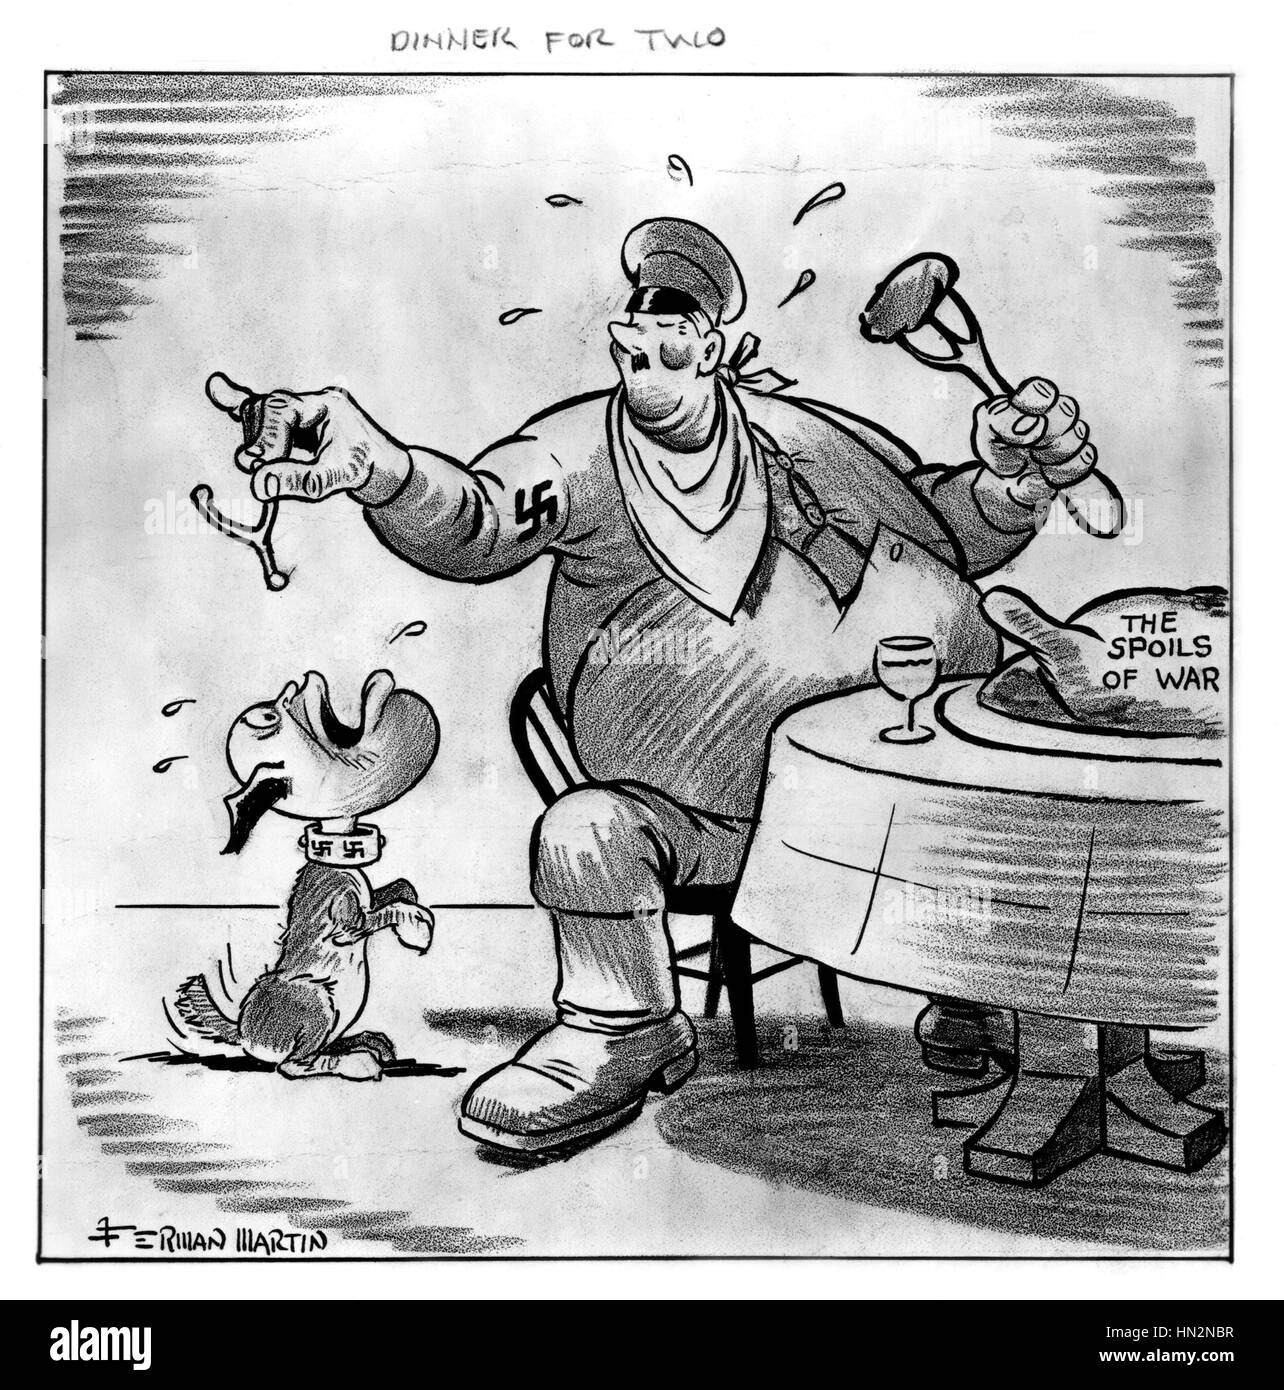 Hitler e Mussolini la condivisione sono il bottino di guerra 'Dinterno per due' vignetta satirica da Martin Ferman Washington. La biblioteca del congresso Foto Stock